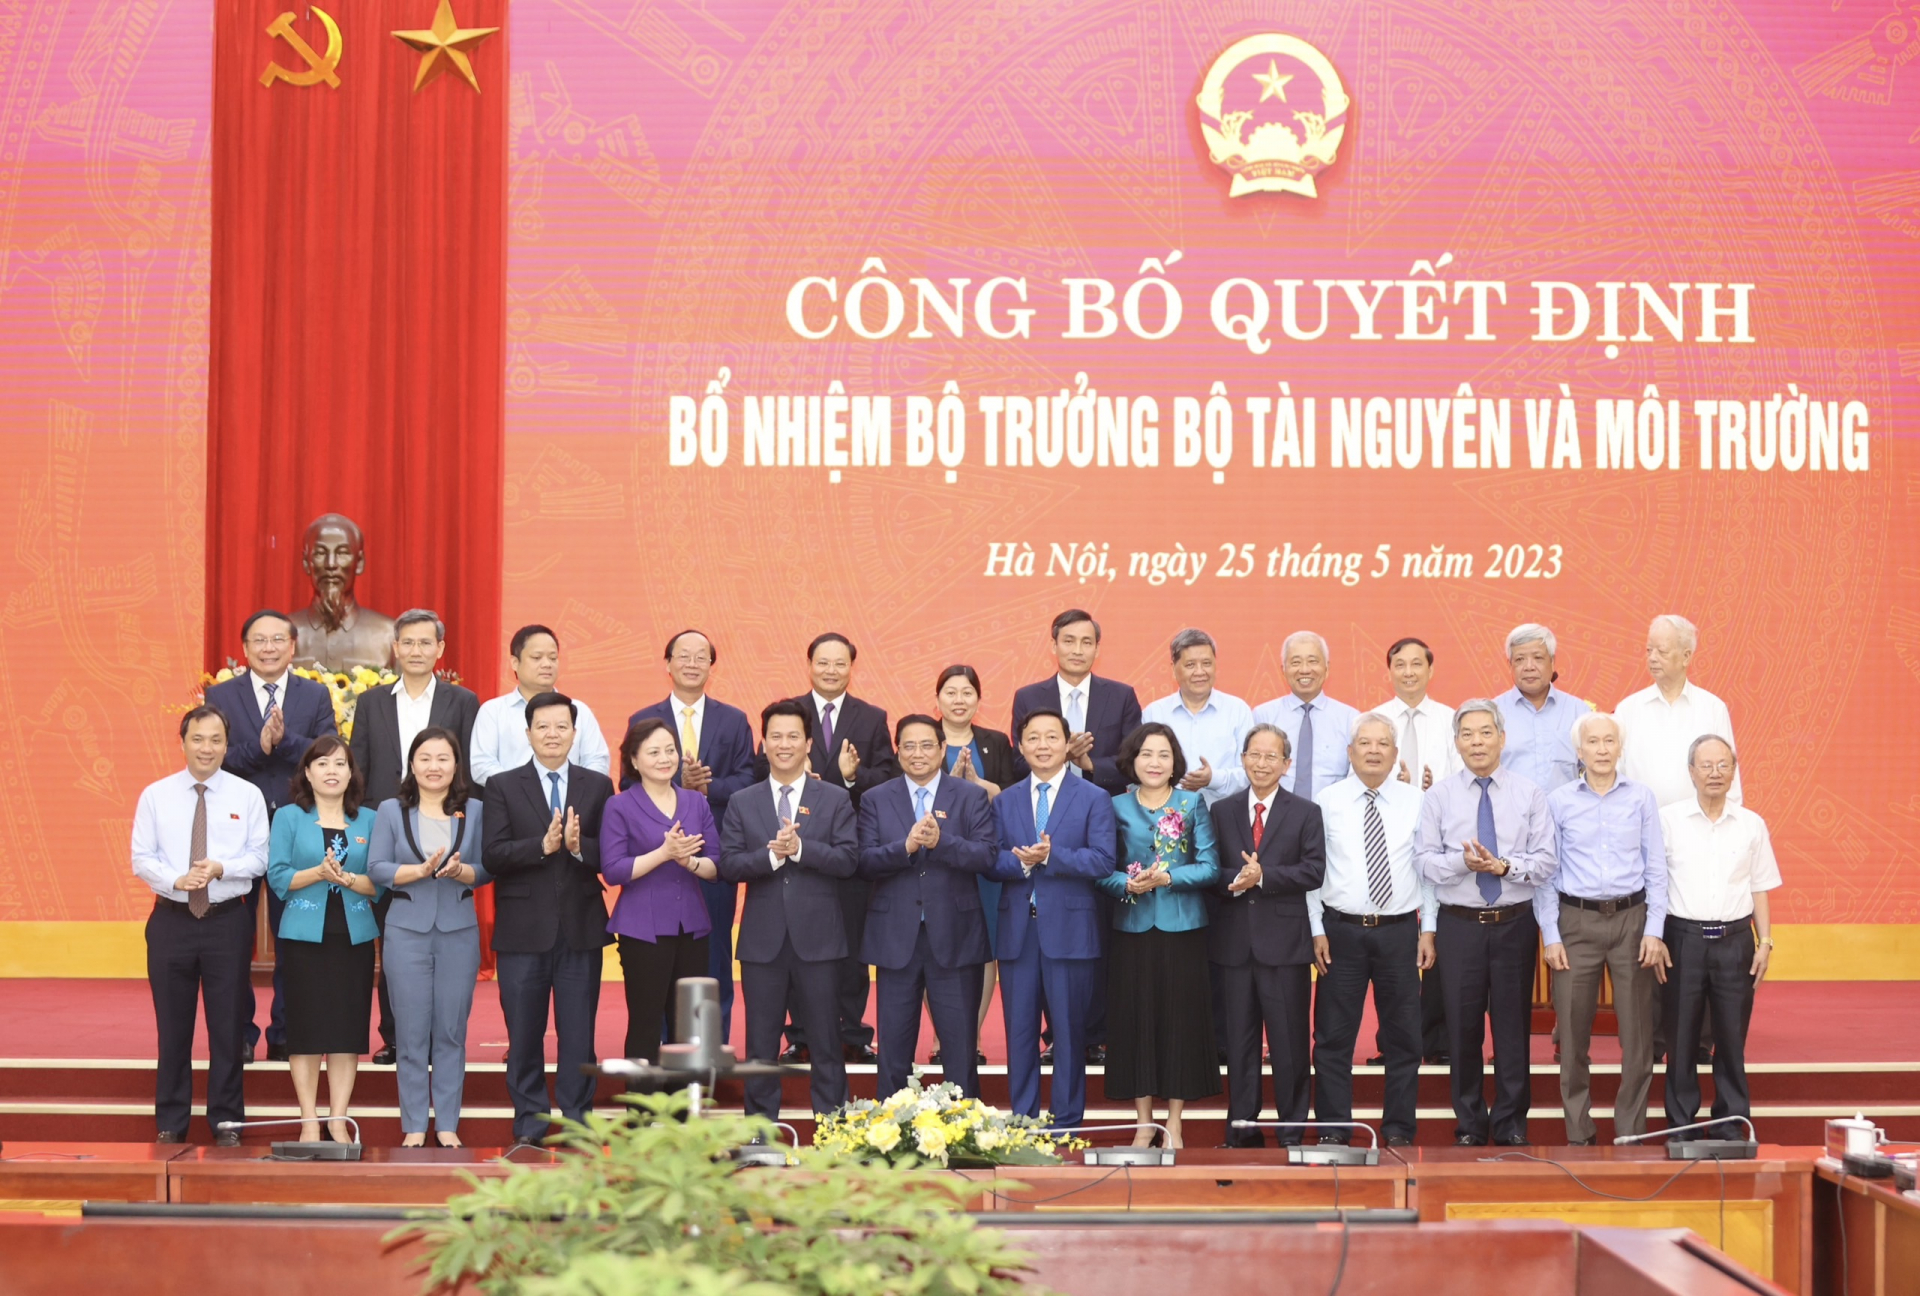 Thủ tướng Phạm Minh Chính, Phó Thủ tướng Trần Hồng Hà cùng các đại biểu dự buổi công bố chụp ảnh lưu niệm chúc mừng đồng chí Đặng Quốc Khánh